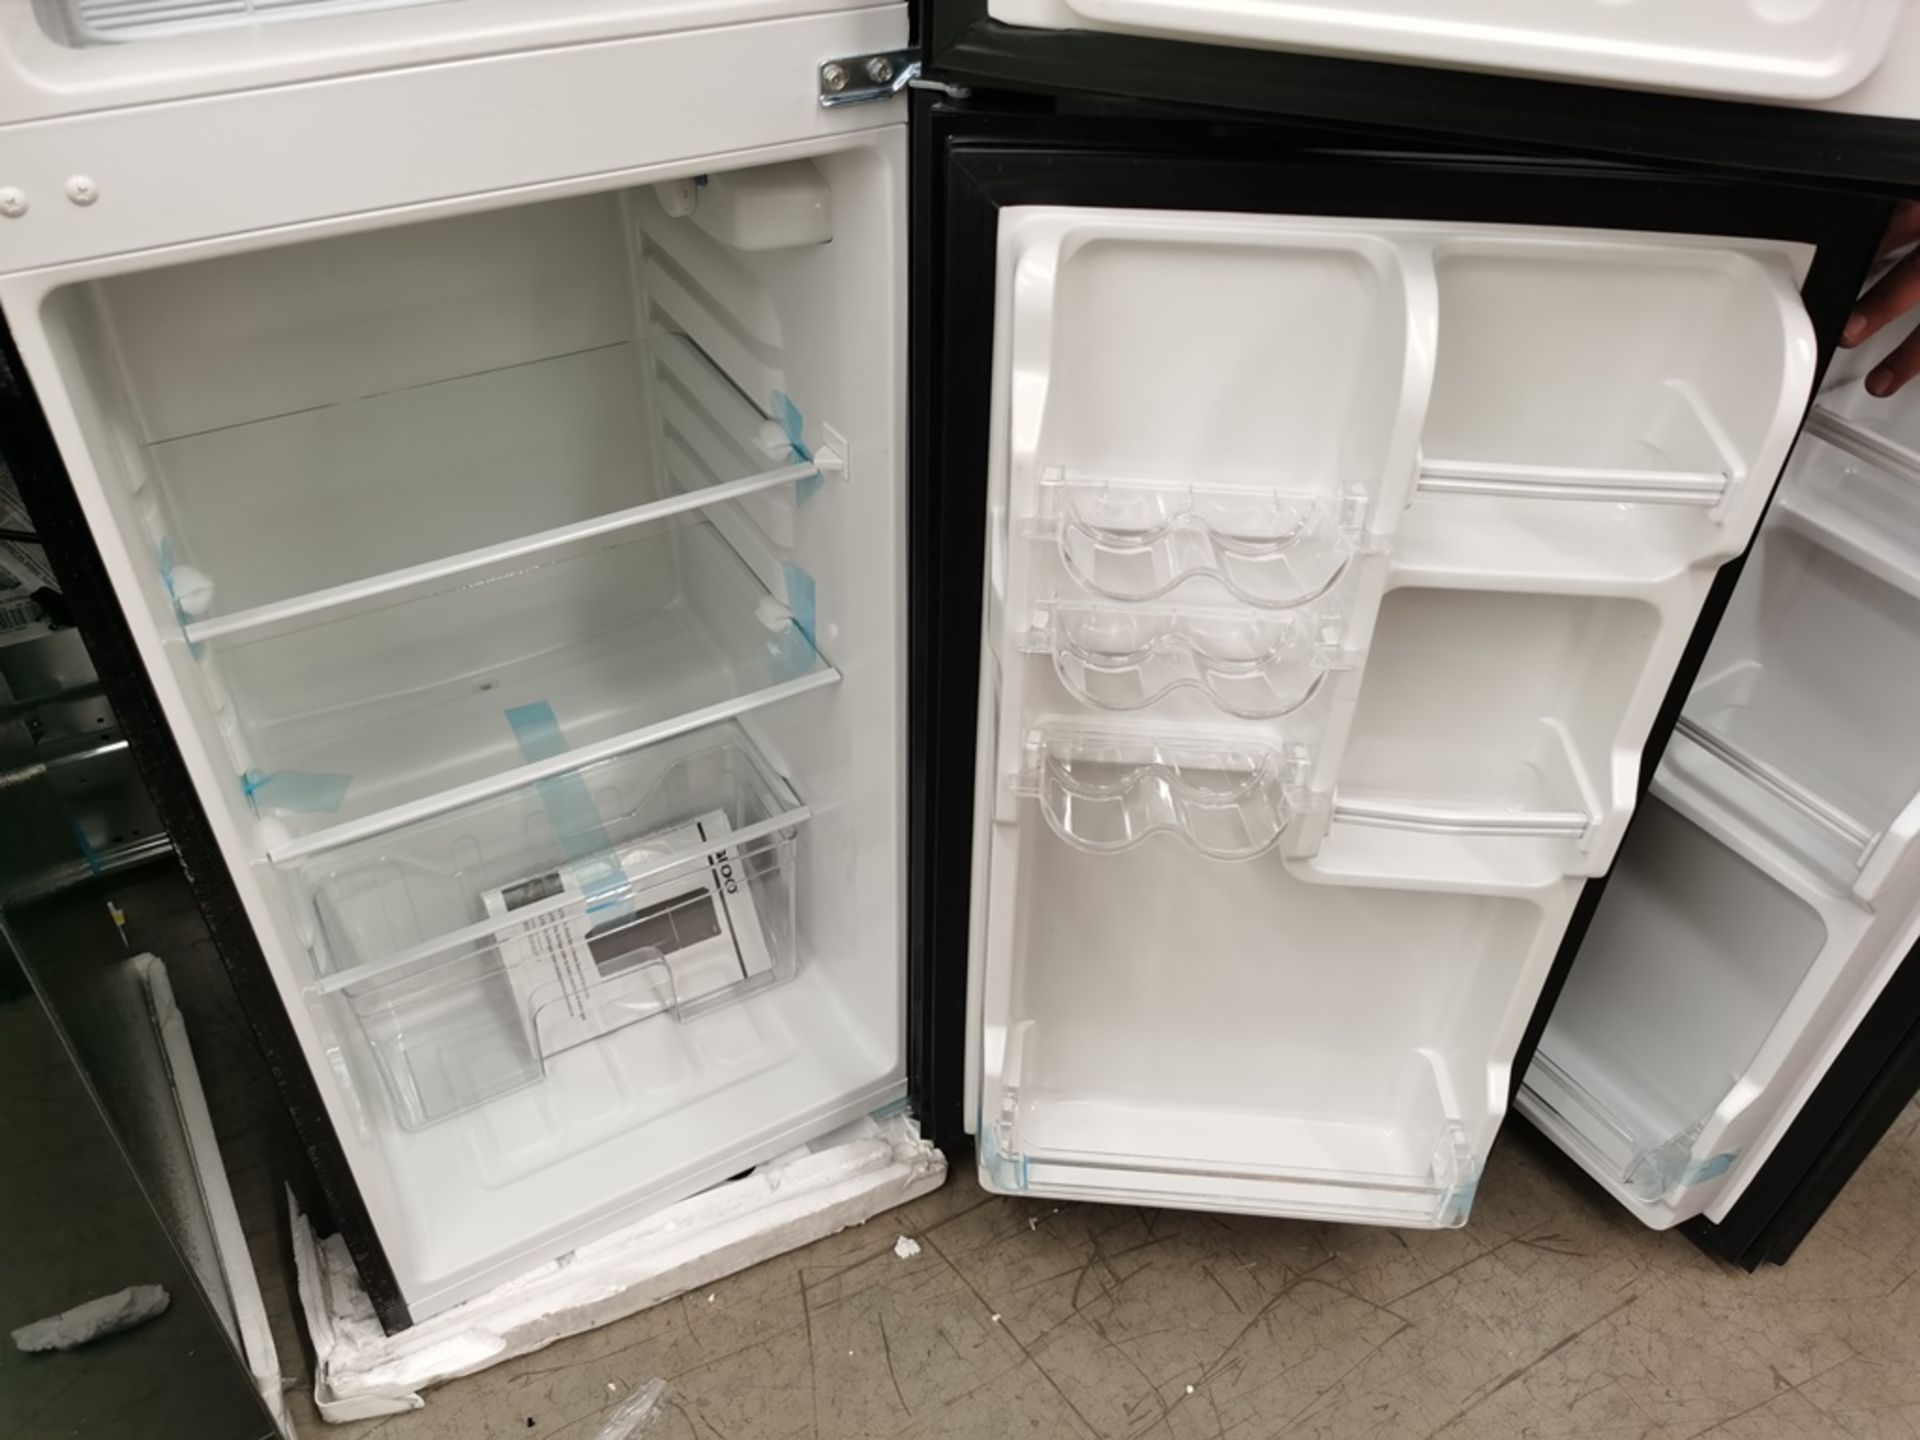 Lote de 2 Refrigeradores contiene: 1 Refrigerador Marca Igloo, Modelo IRF47DDGLSBK, Serie N/D, - Image 10 of 11